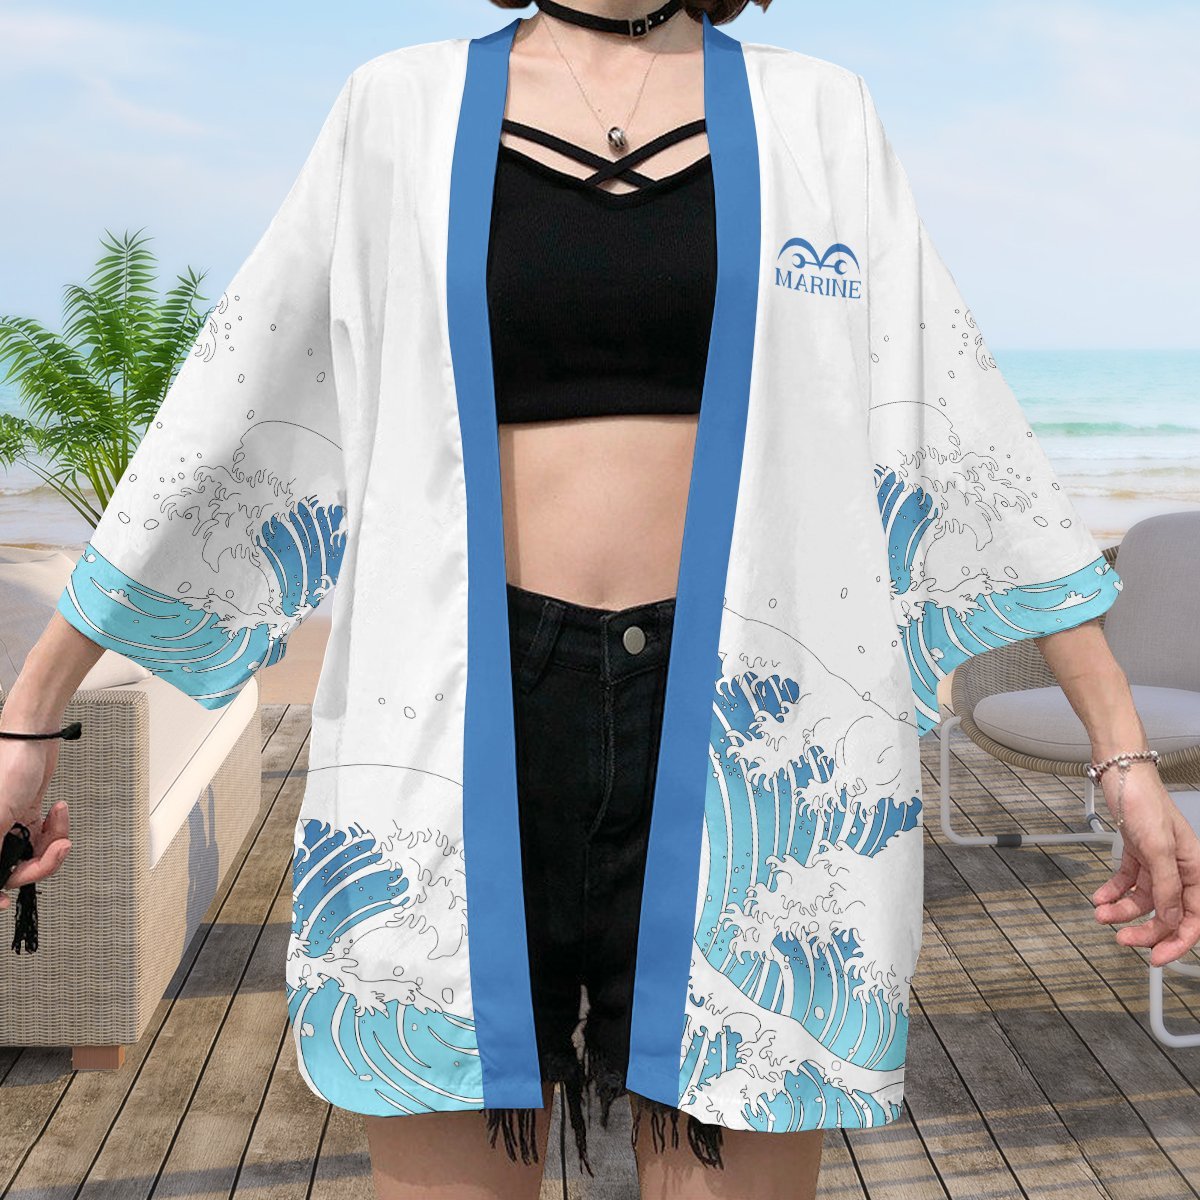 2XL Official Anime Kimono Merch